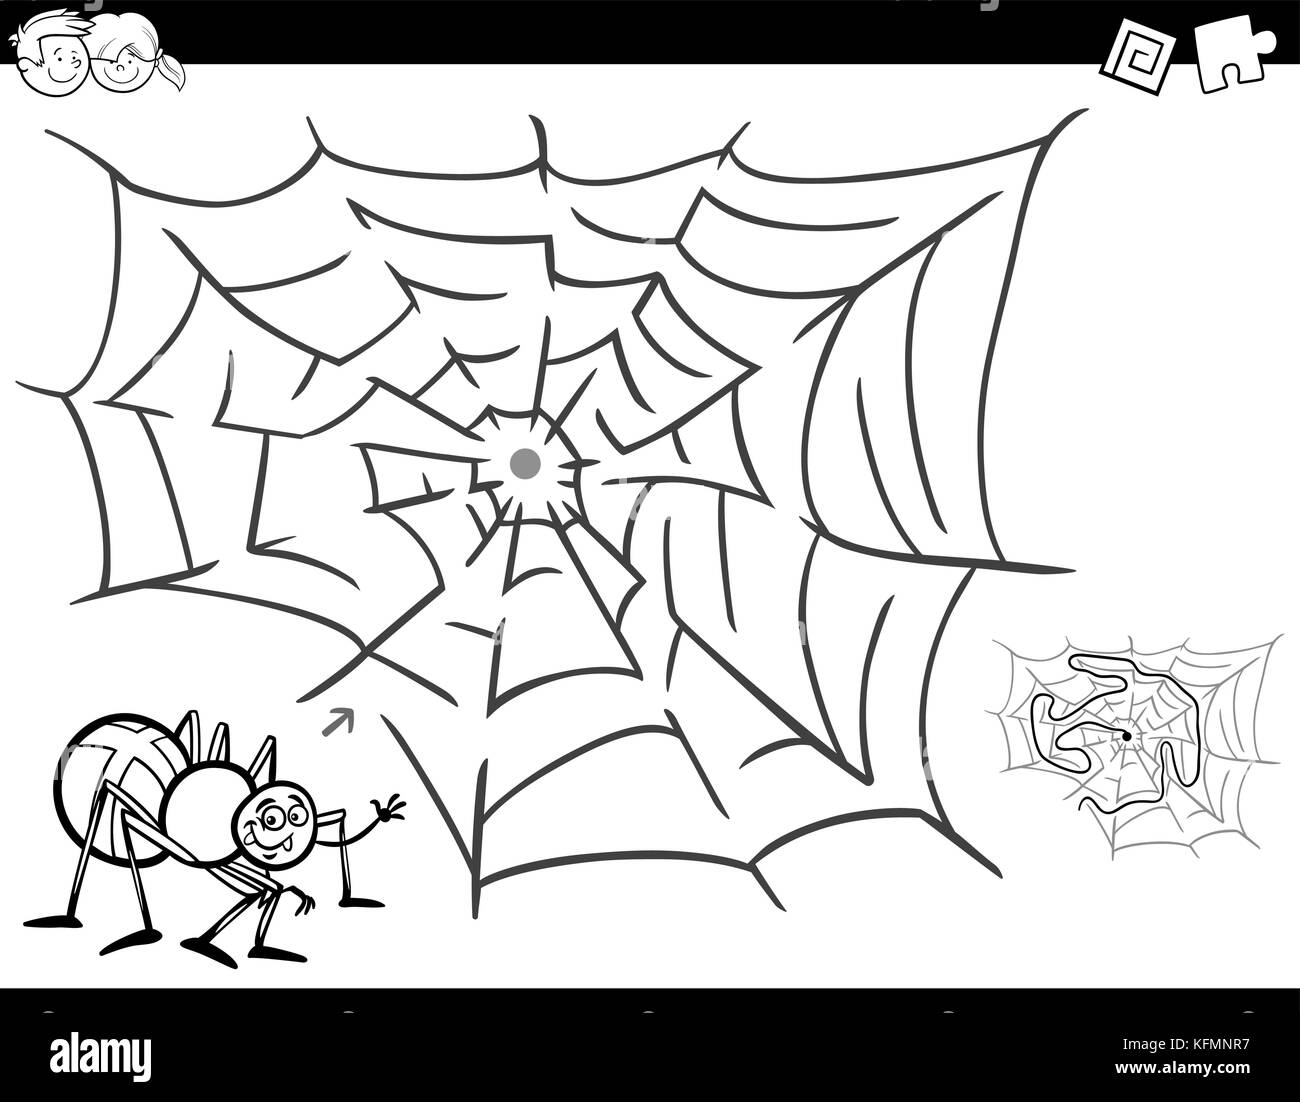 Schwarze und weiße Cartoon Illustration für Bildung Labyrinth oder Irrgarten Aktivität Spiel für Kinder mit Spinne insekt Charakter und seine Web Coloring Book Stock Vektor